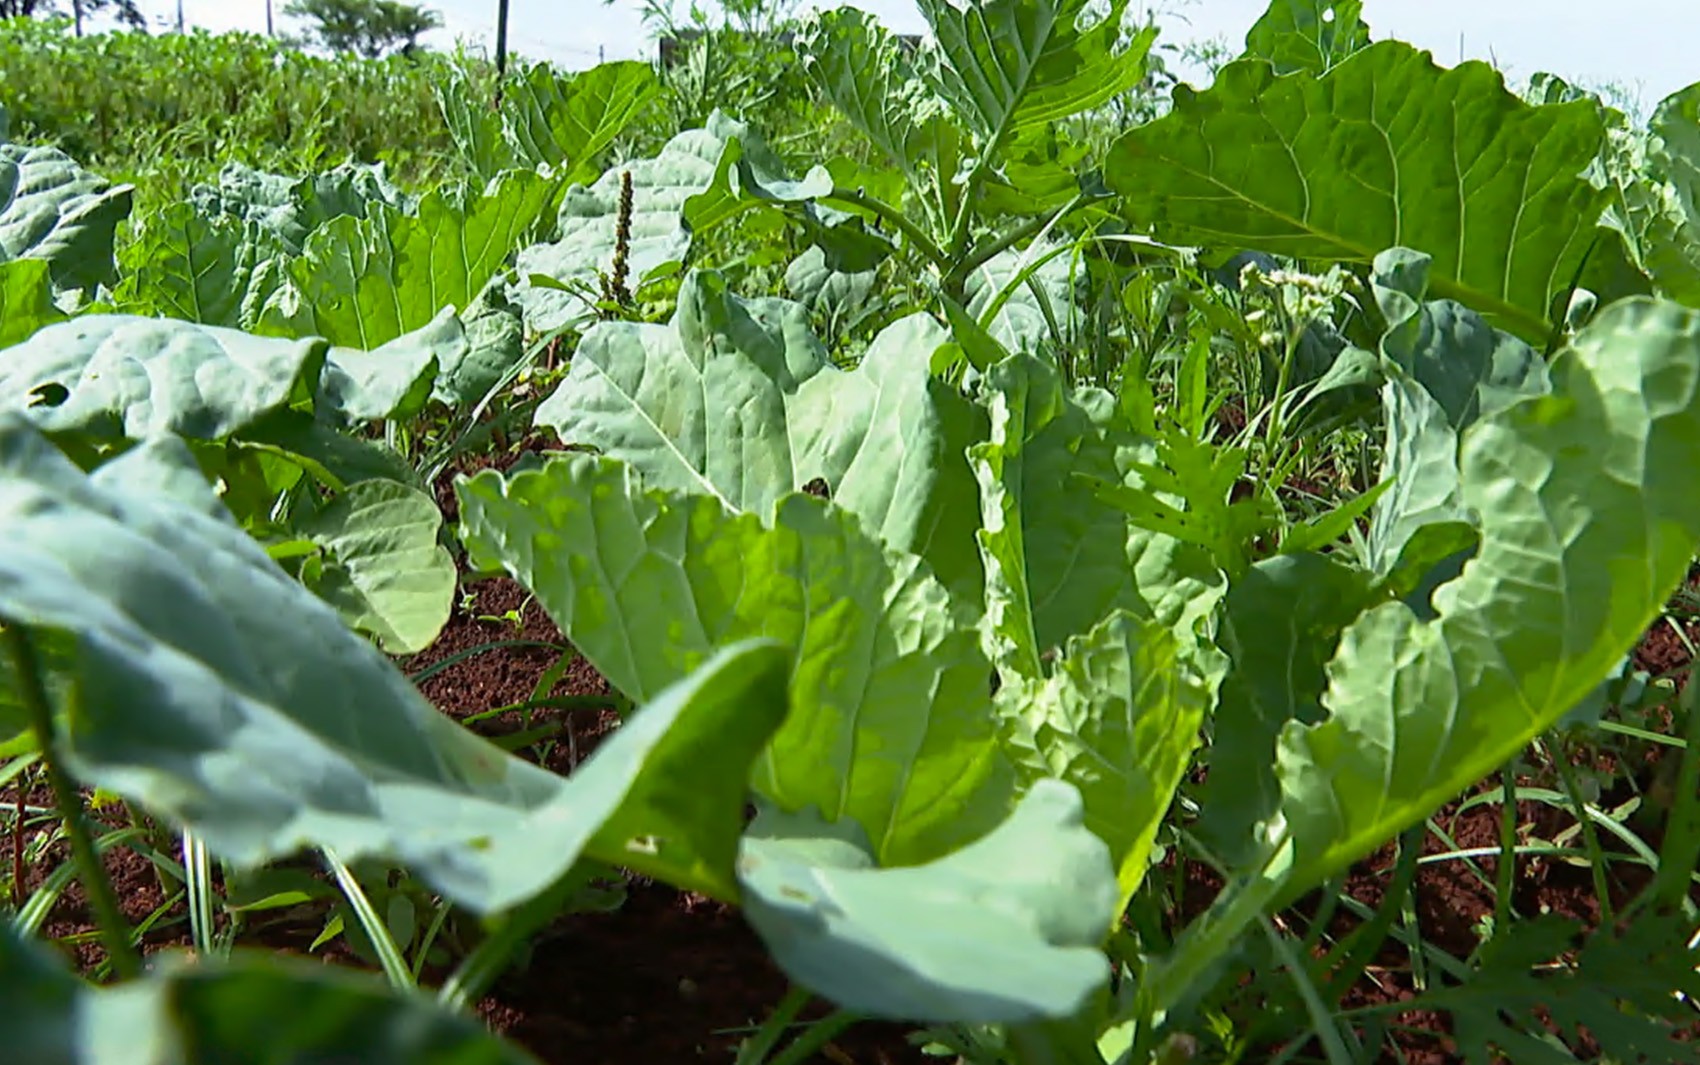 Excesso de chuvas na região de Ribeirão Preto afeta produção de verduras e hortaliças